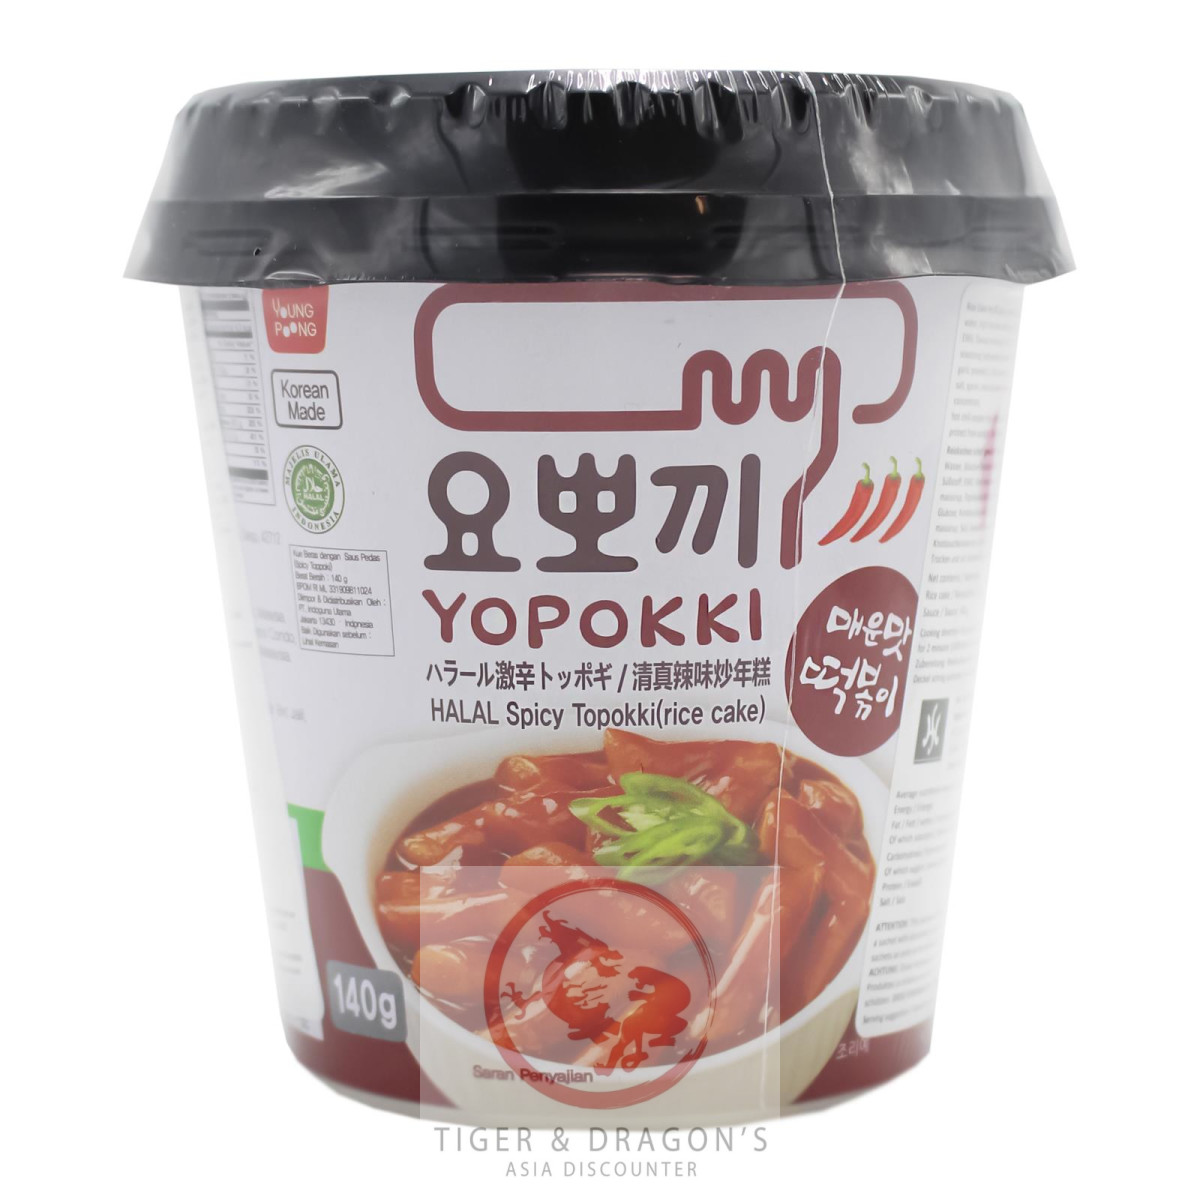 Yopokki Reiskuchen Hot & Spicy 140g